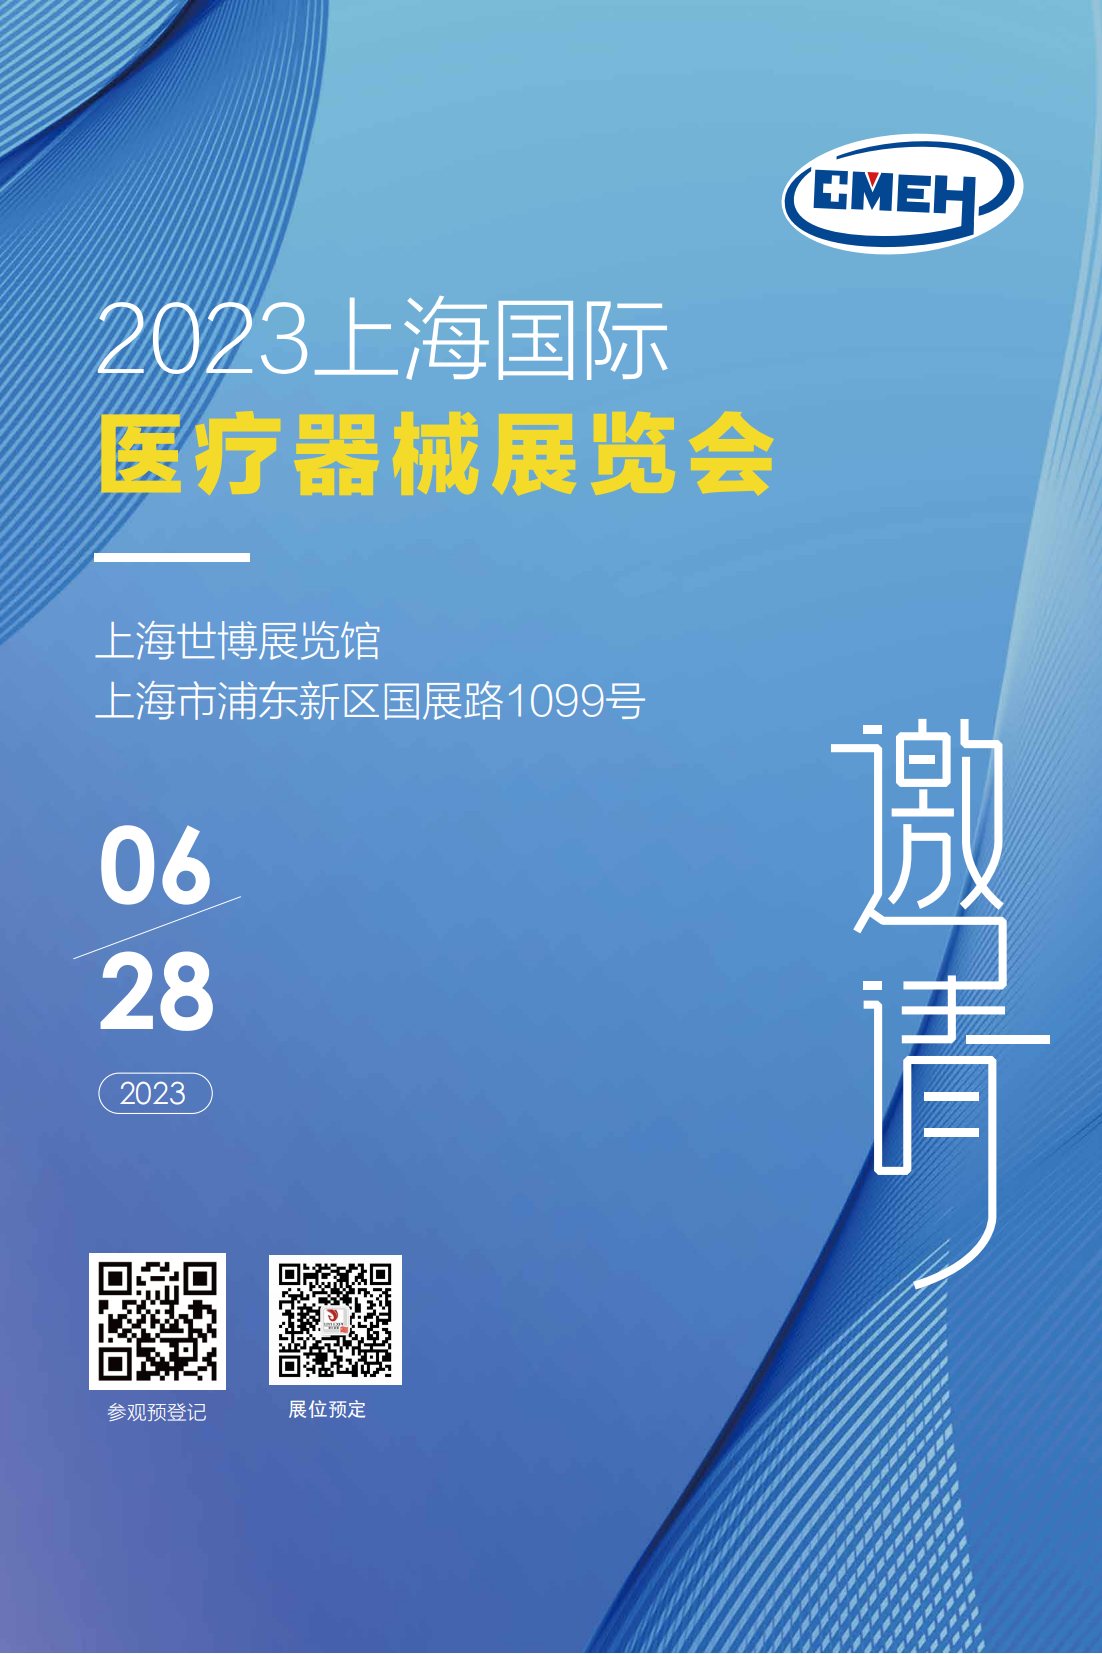 上海医博会6月26日盛大开幕，汇聚行业精英，共创医疗盛会